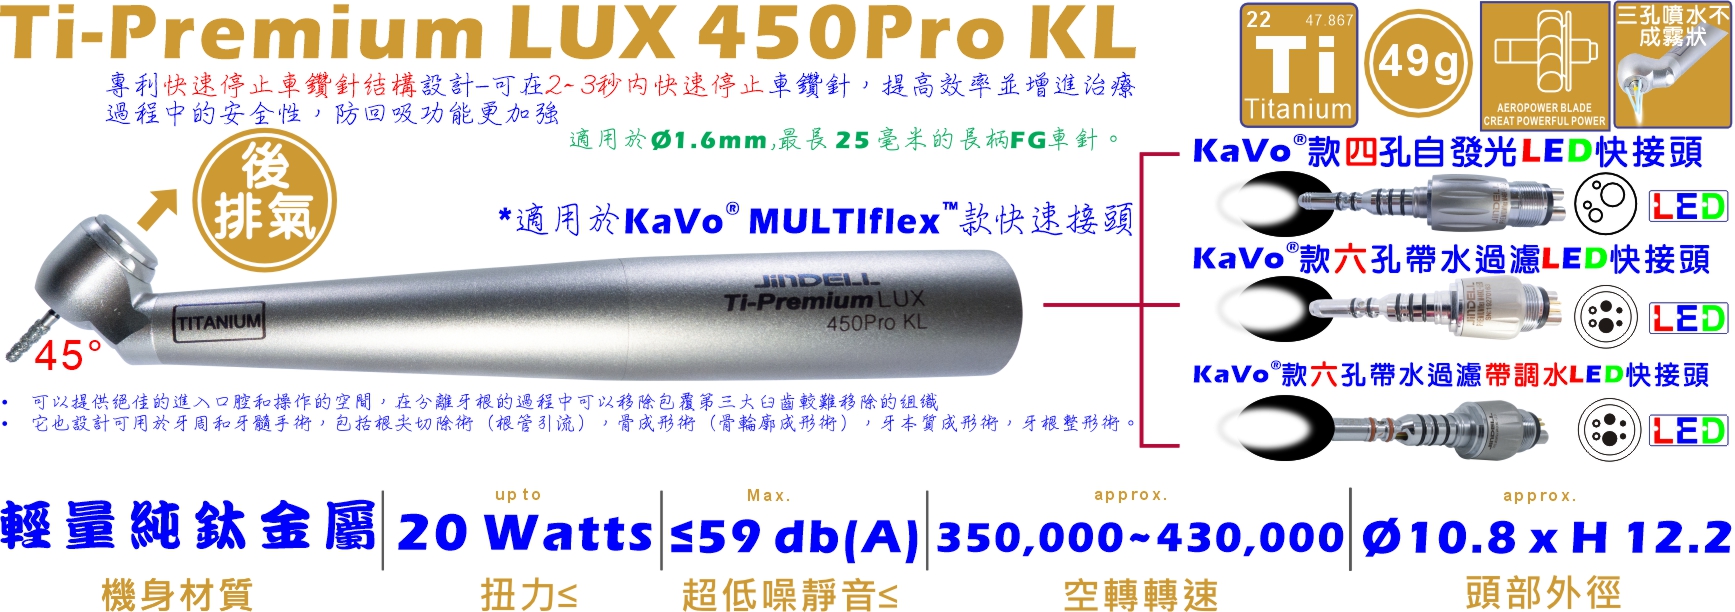 Ti-Premium LUX 450Pro KL-詳情